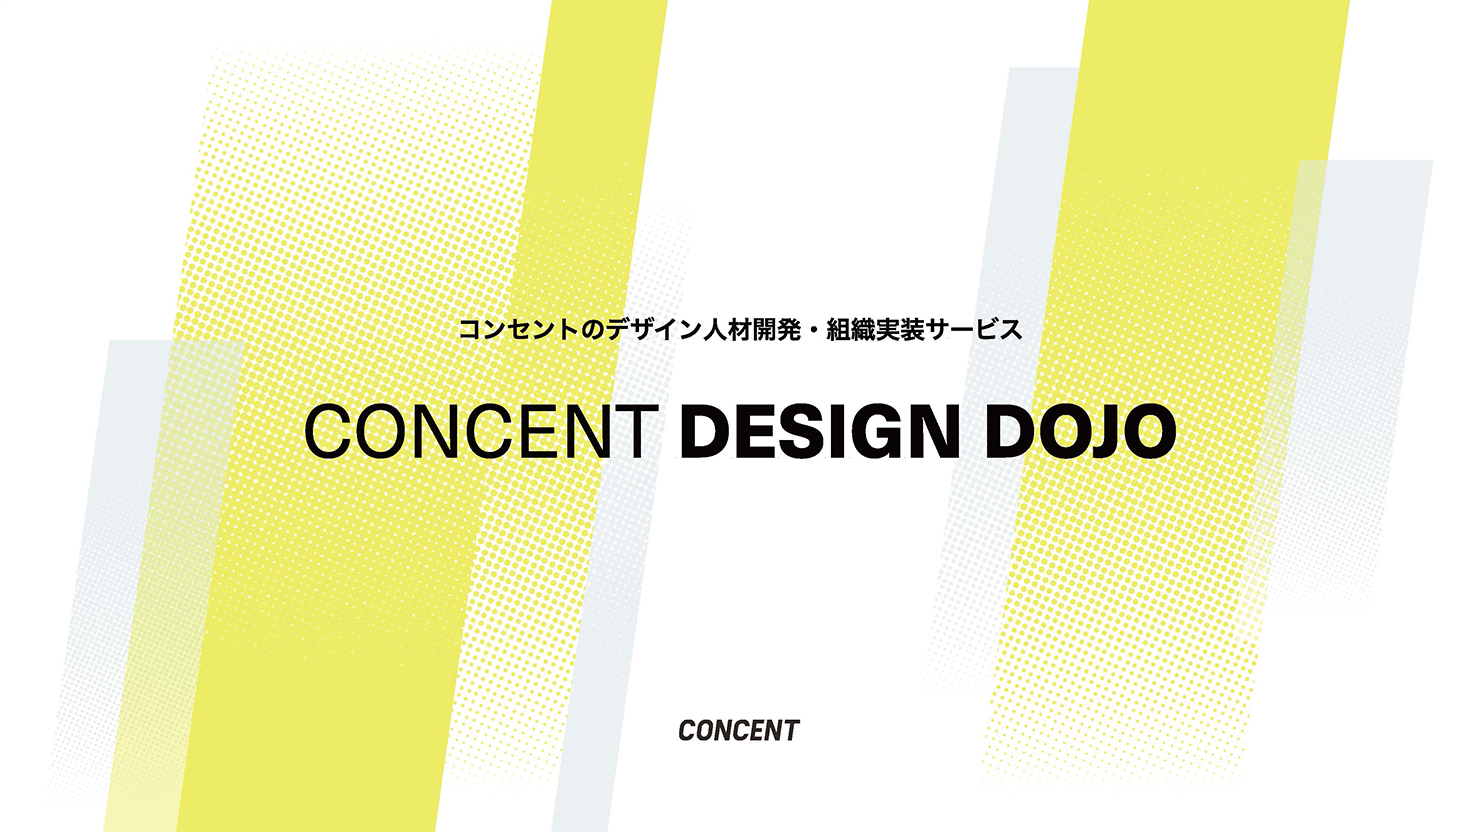 コンセントのデザイン人材育成・組織実装サービス「CONCENT DESIGN DOJO」 の表紙画像。